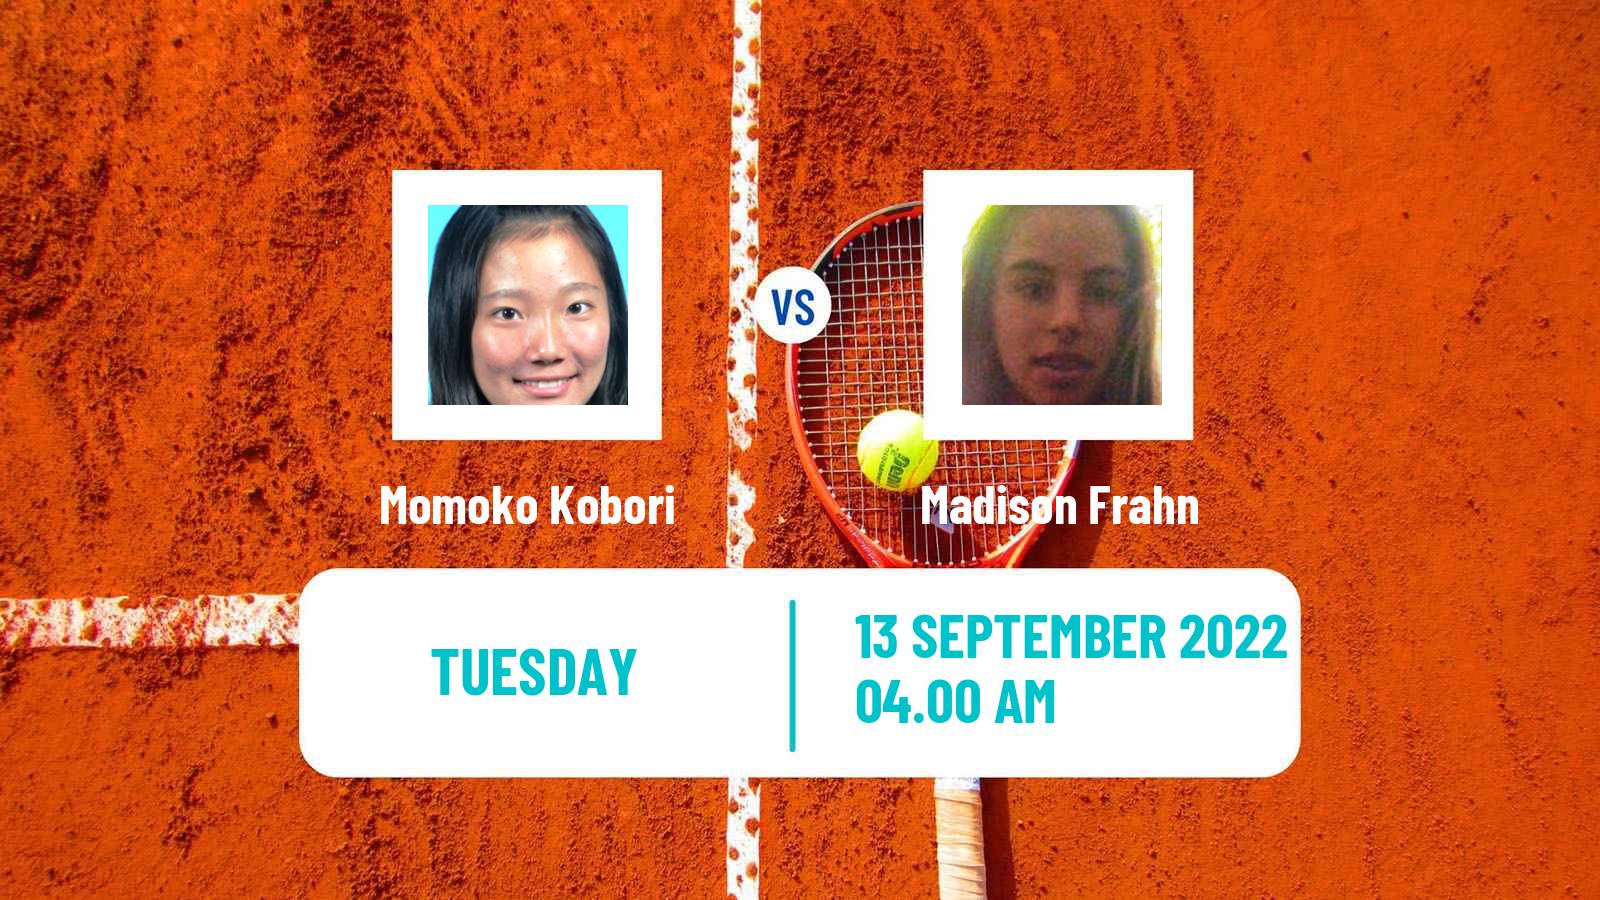 Tennis ITF Tournaments Momoko Kobori - Madison Frahn